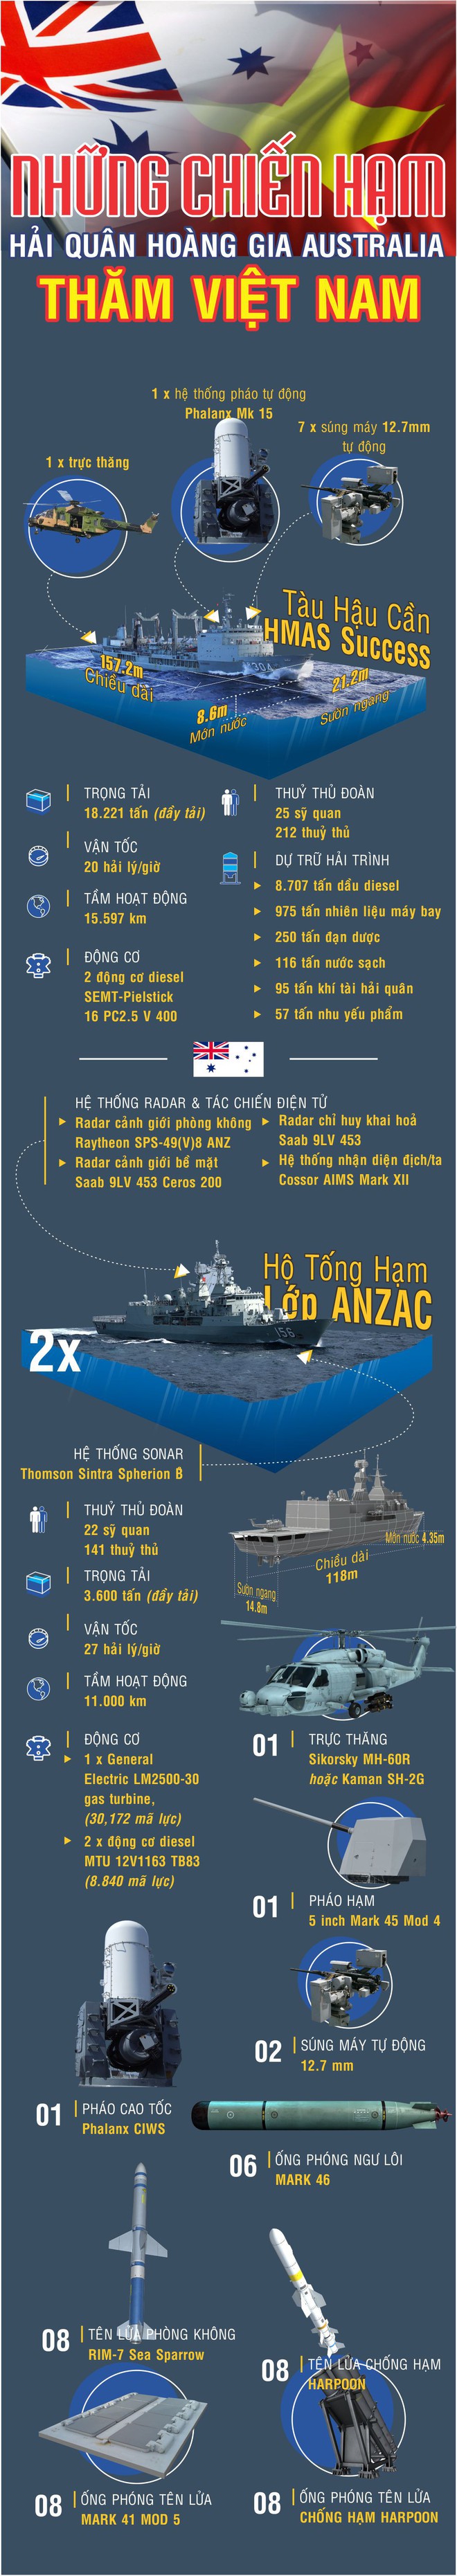 Những chiến hạm hiện đại của Hải quân Australia đang thăm Việt Nam có gì đặc biệt? - Ảnh 1.